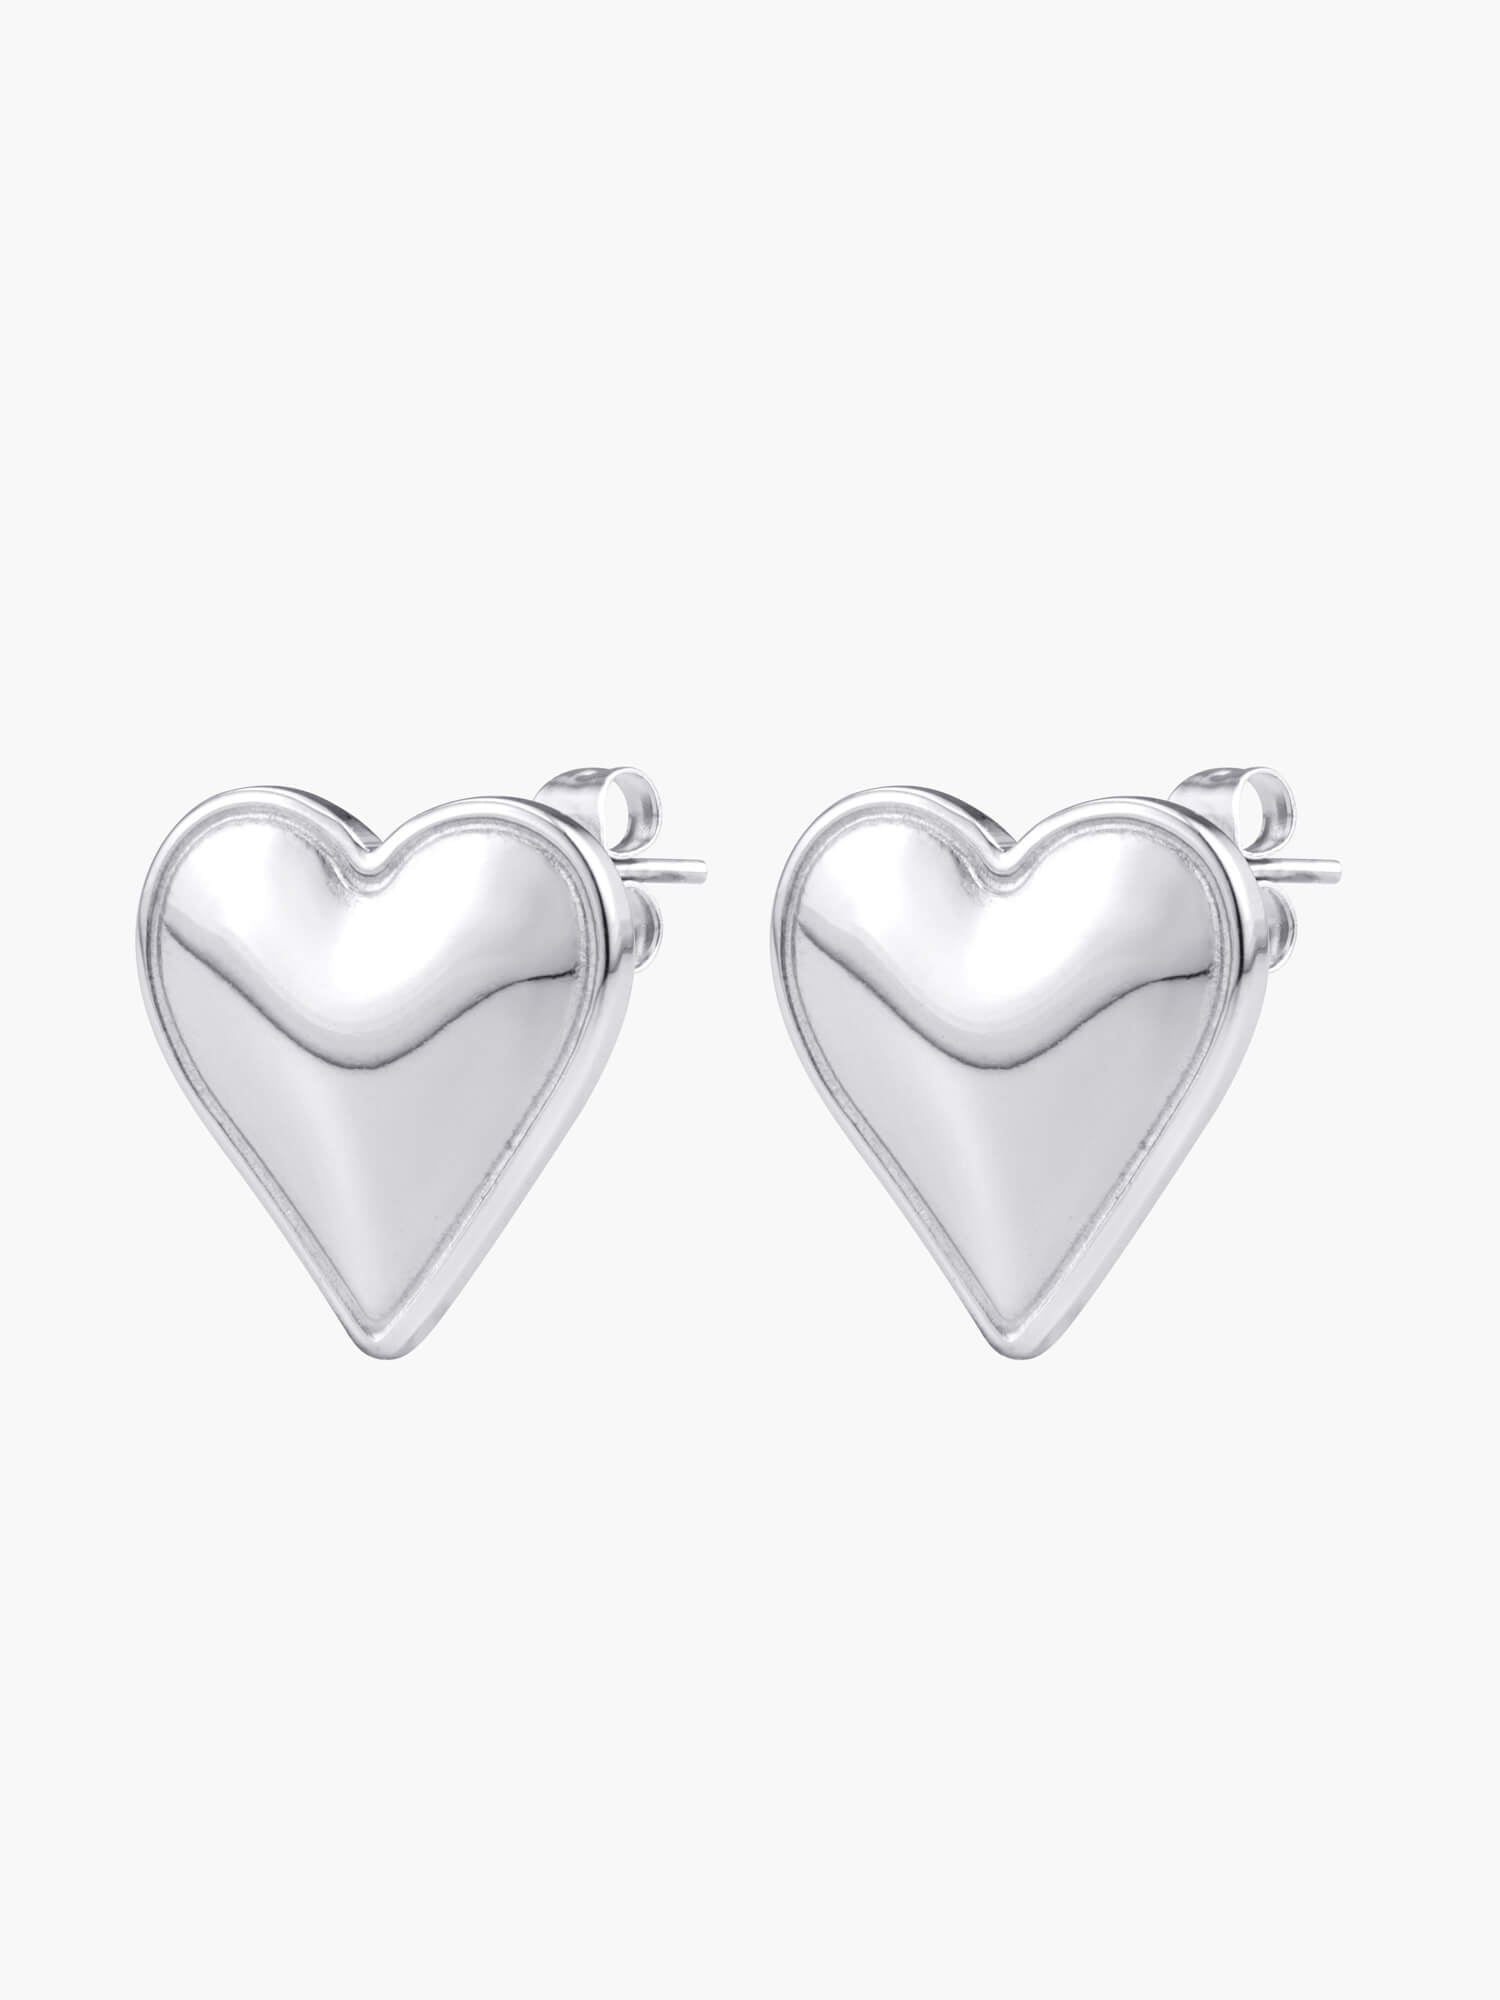 Silver Love Heart Earrings